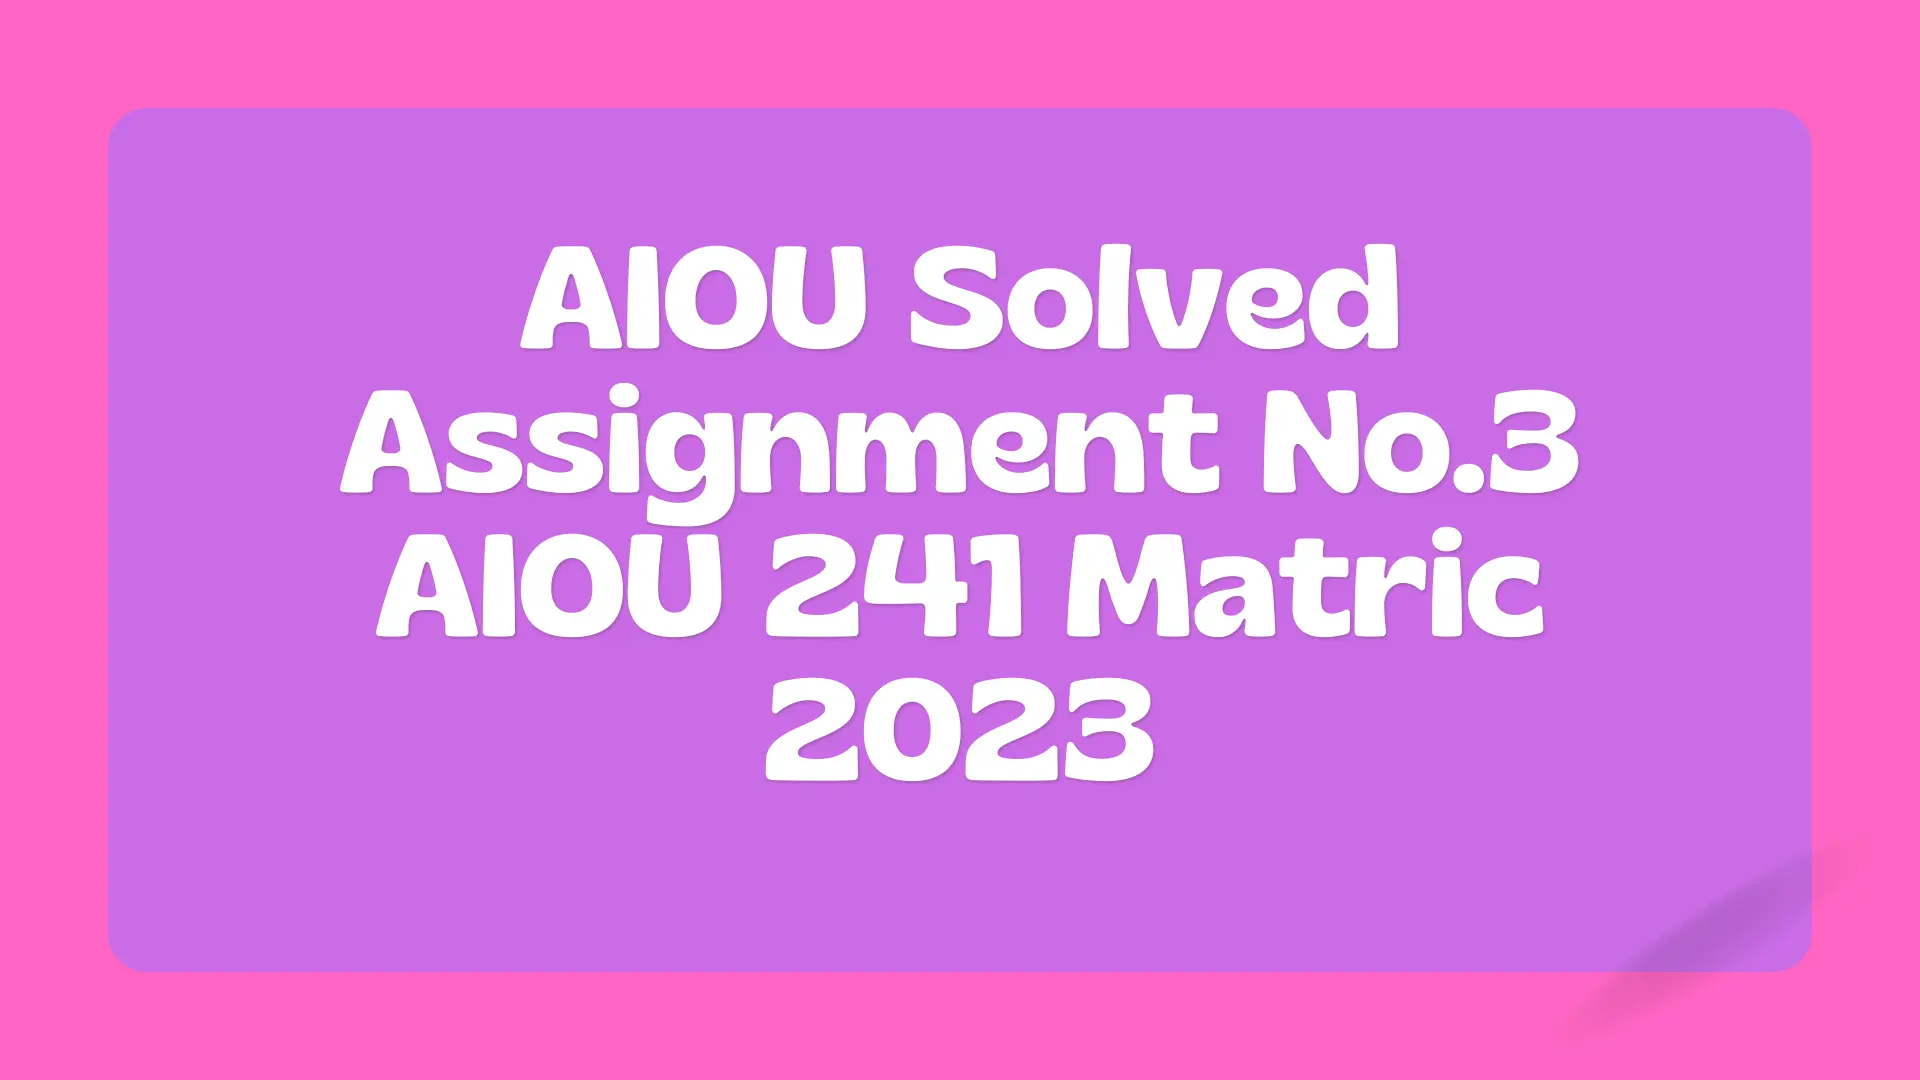 Assignment No.3 AIOU 241